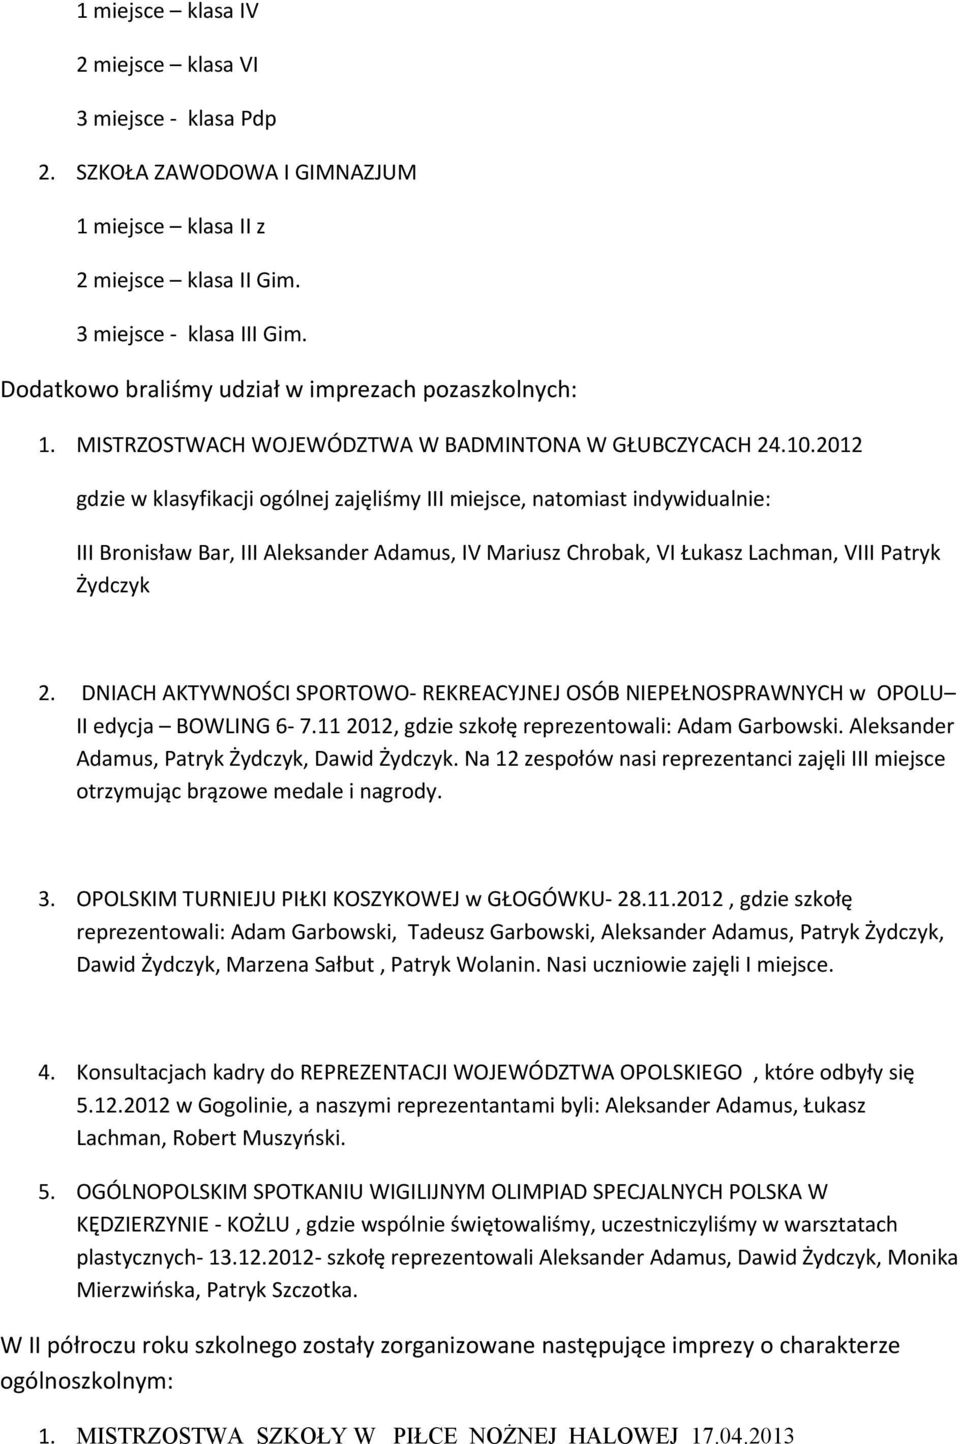 2012 gdzie w klasyfikacji ogólnej zajęliśmy, natomiast indywidualnie: III Bronisław Bar, III Aleksander Adamus, IV Mariusz Chrobak, VI Łukasz Lachman, VIII Patryk Żydczyk 2.